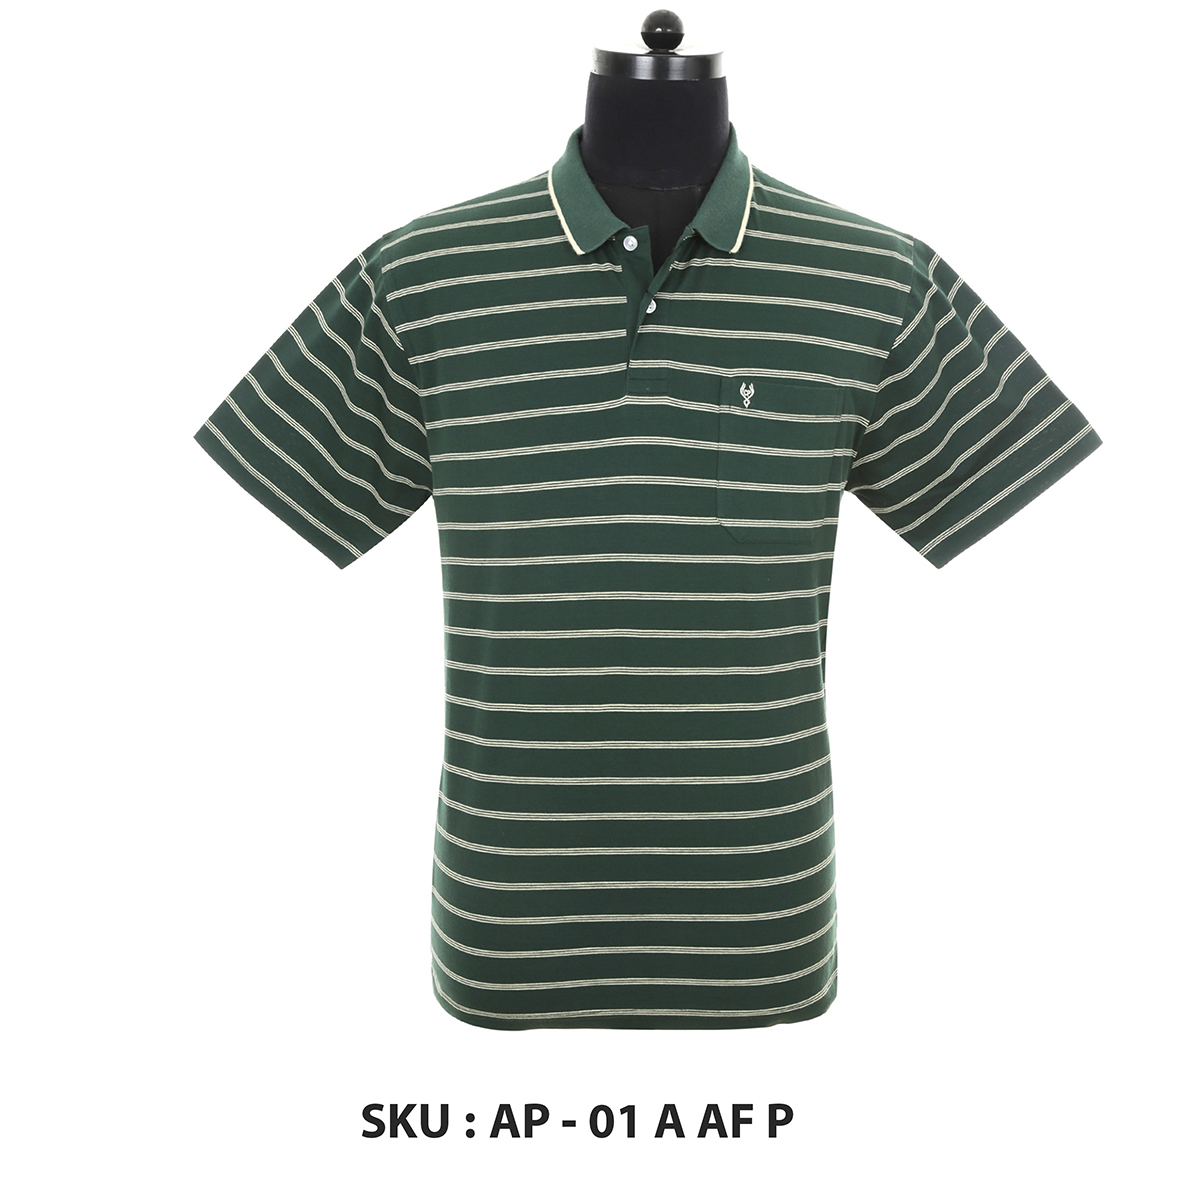 Classic Polo Mens T Shirt Ap - 01 A Af P Green L